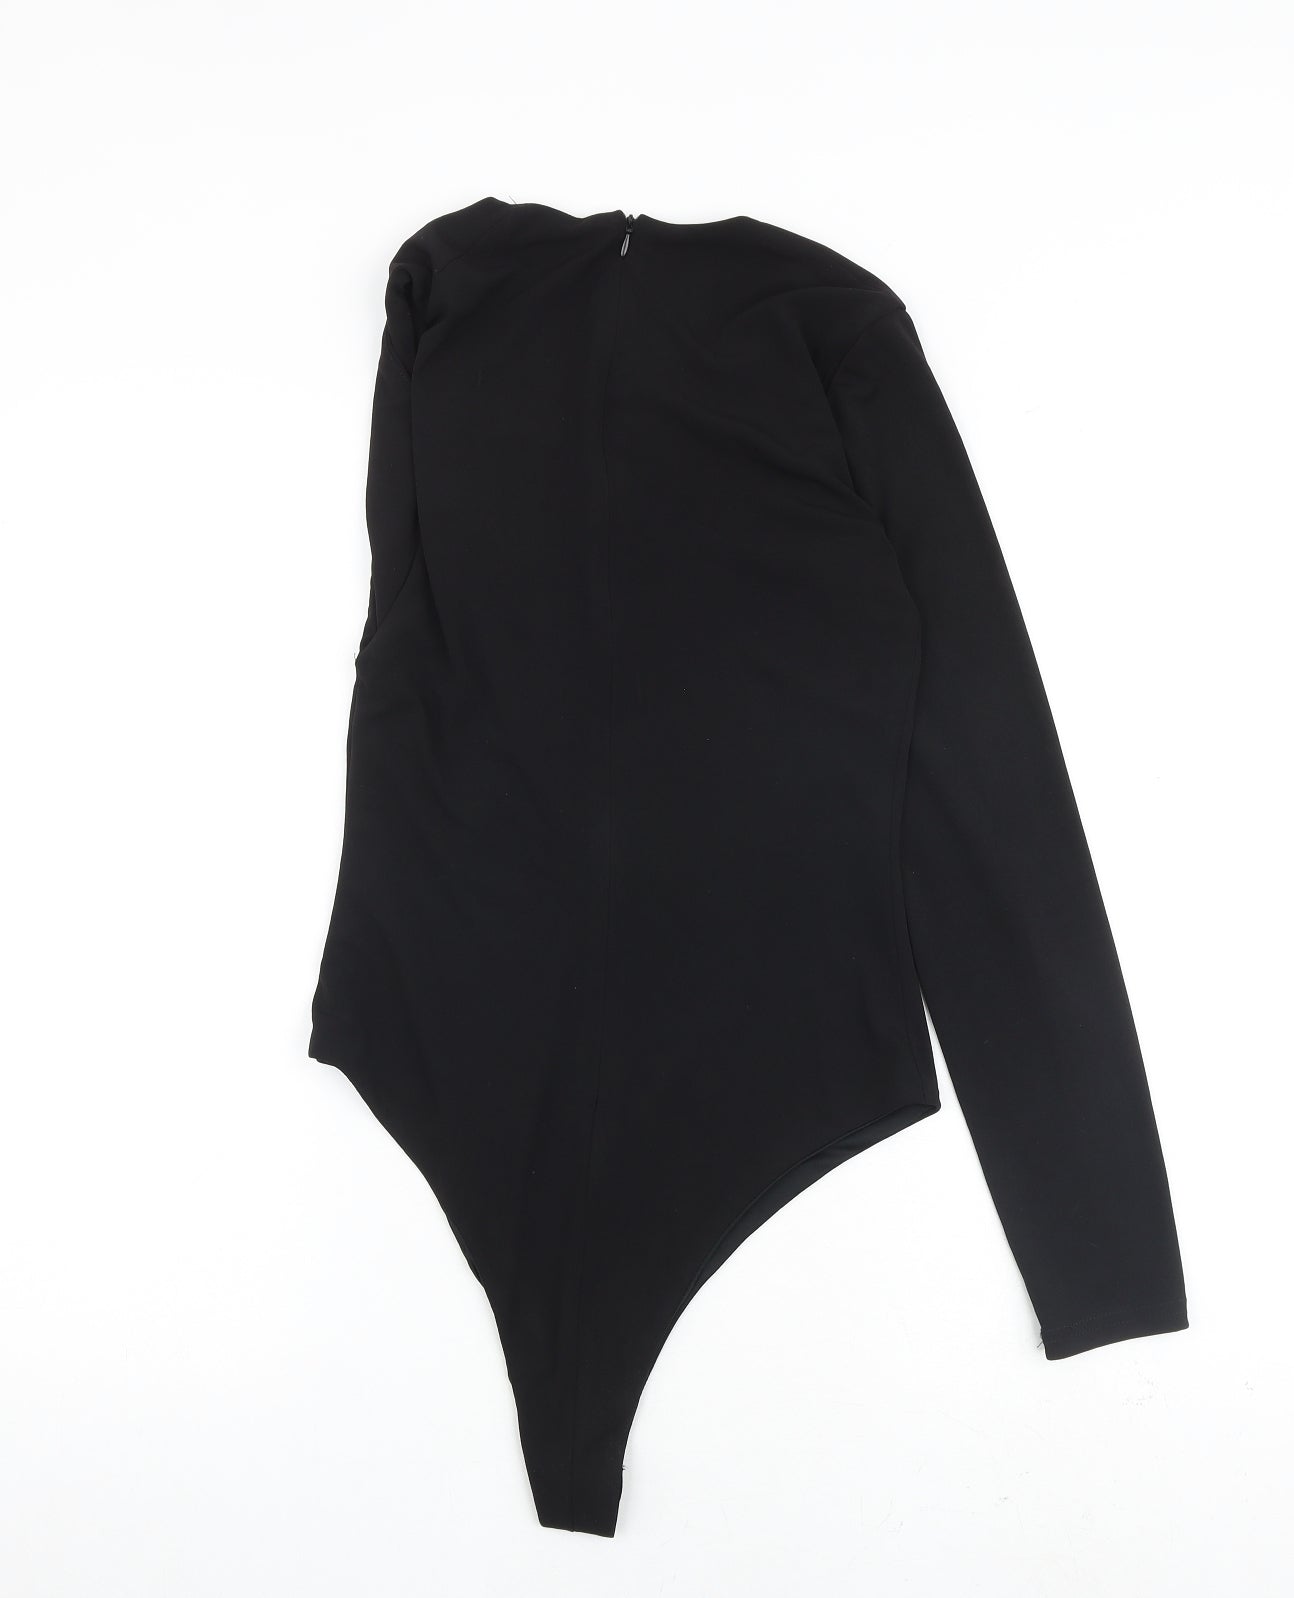 Zara Womens Black Polyester Bodysuit One-Piece Size M Zip